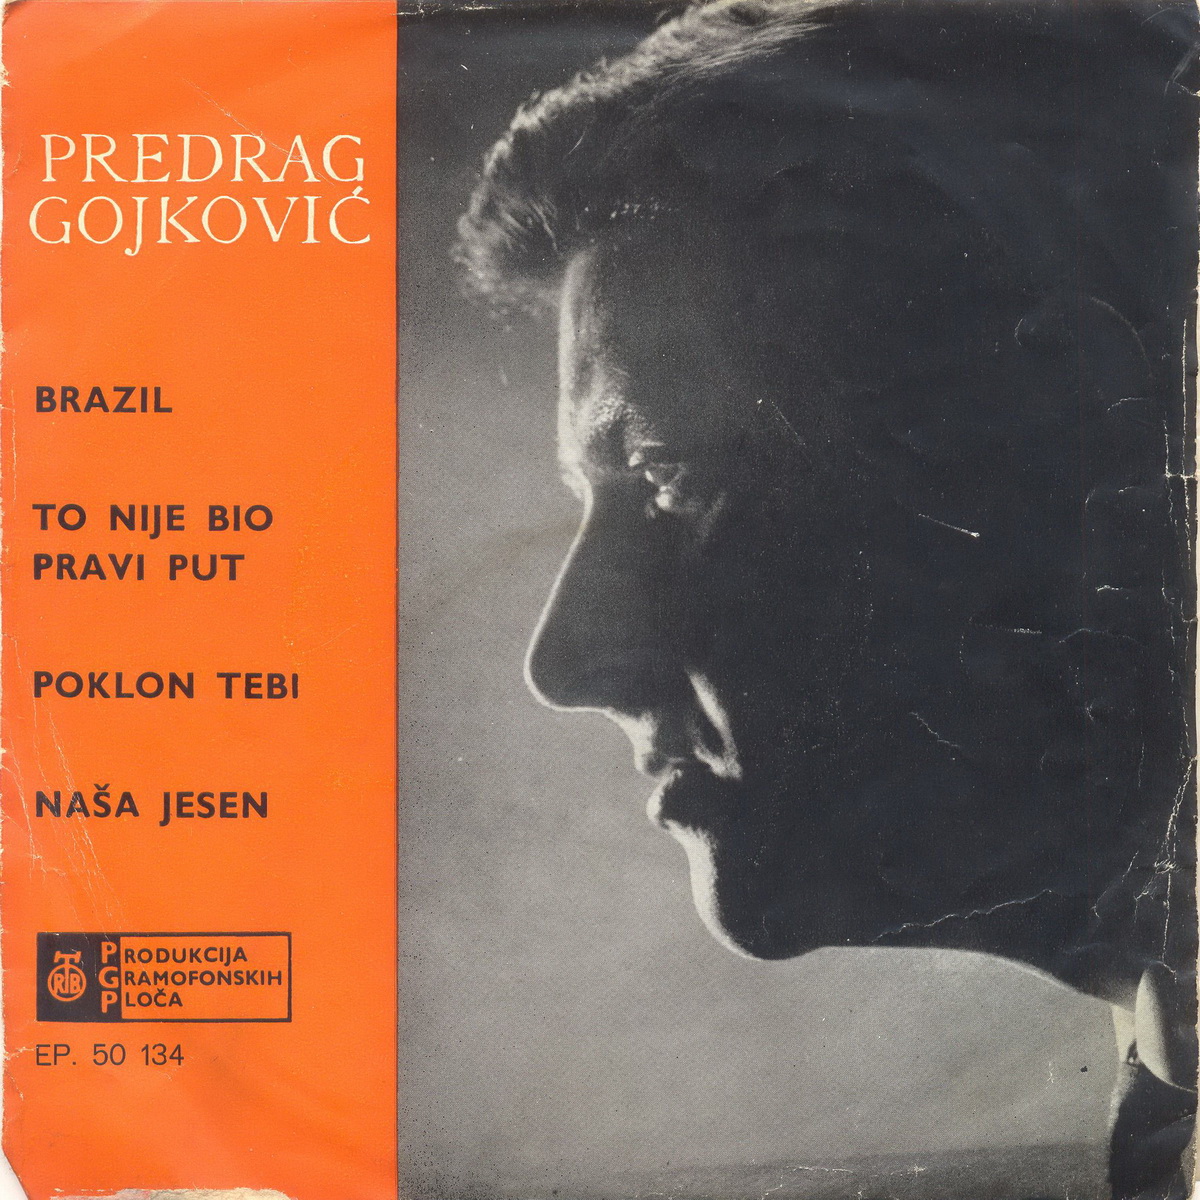 Predrag Gojkovic 1963 Brazil a